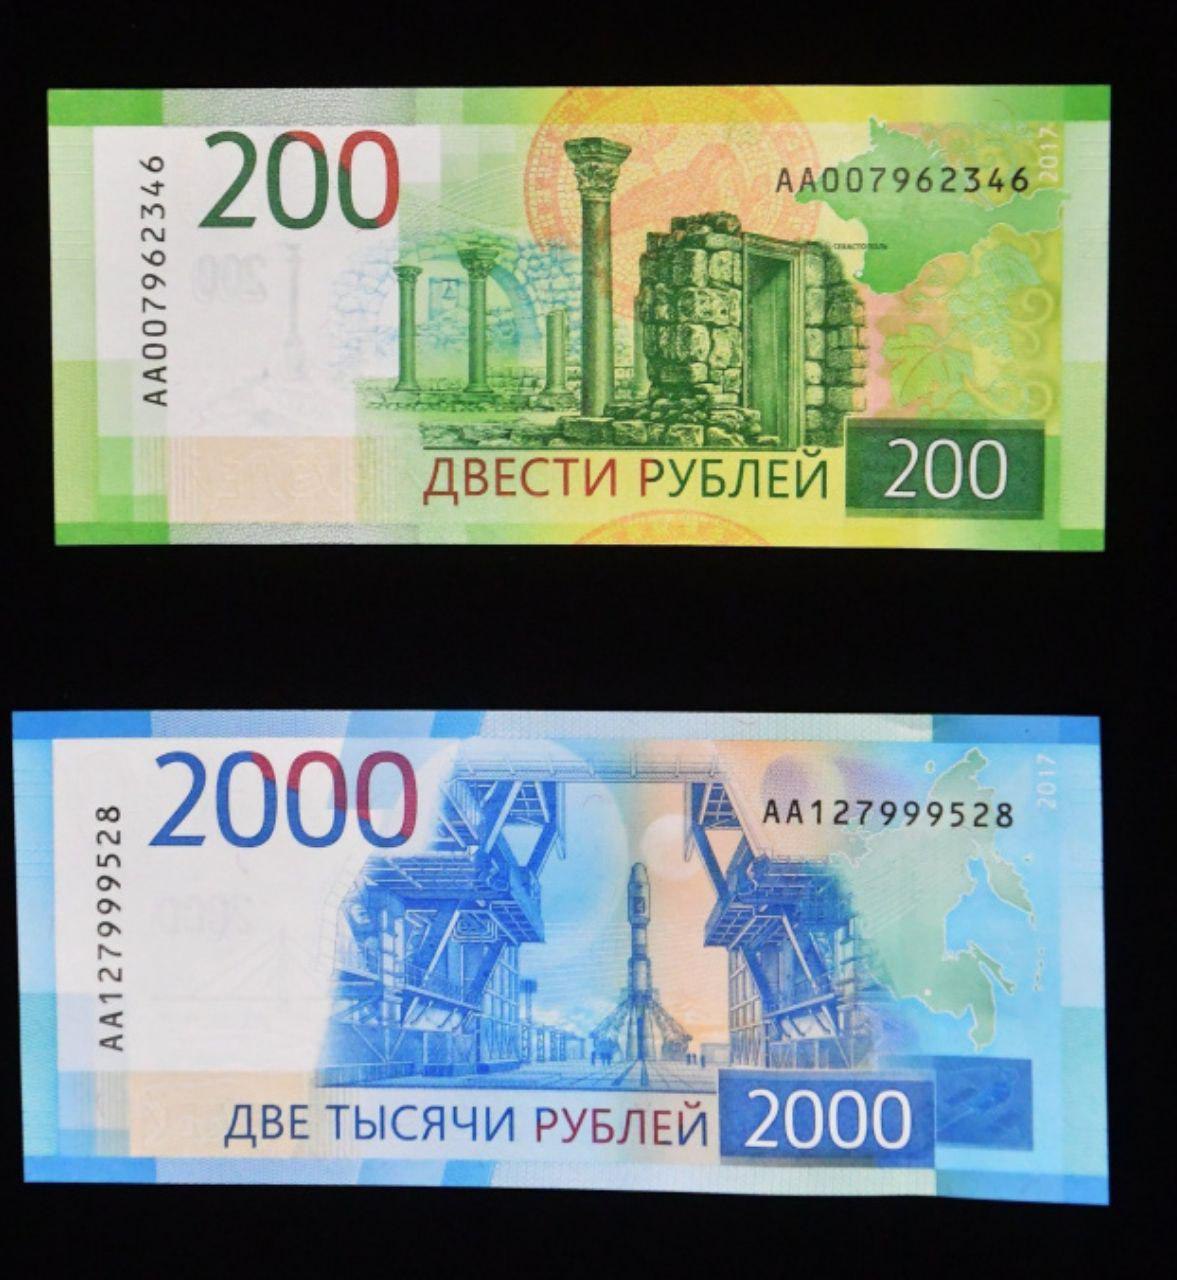 Лицевая сторона купюр рублей. 200 И 2000 рублей. Лицевая сторона купюры 200. Банкнота 200 и 2000 рублей. Купюра 200 рублей.